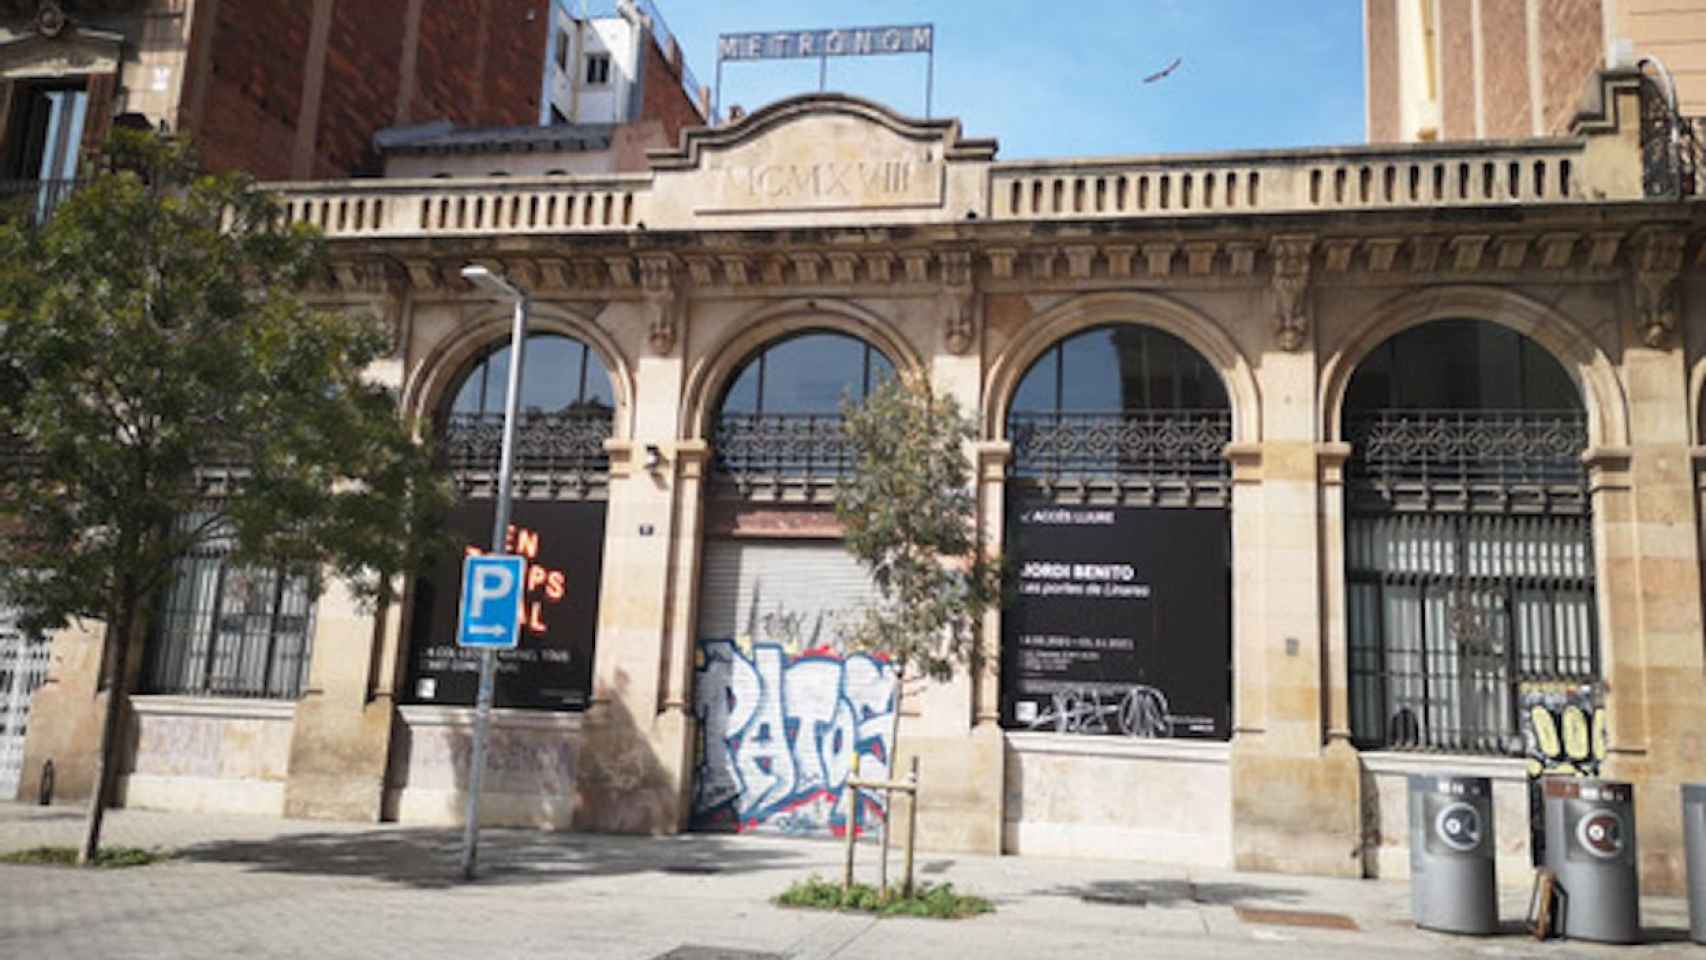 Edificio donde se encuentra la antigua sala de arte contemporáneo Metrònom / INMA SANTOS